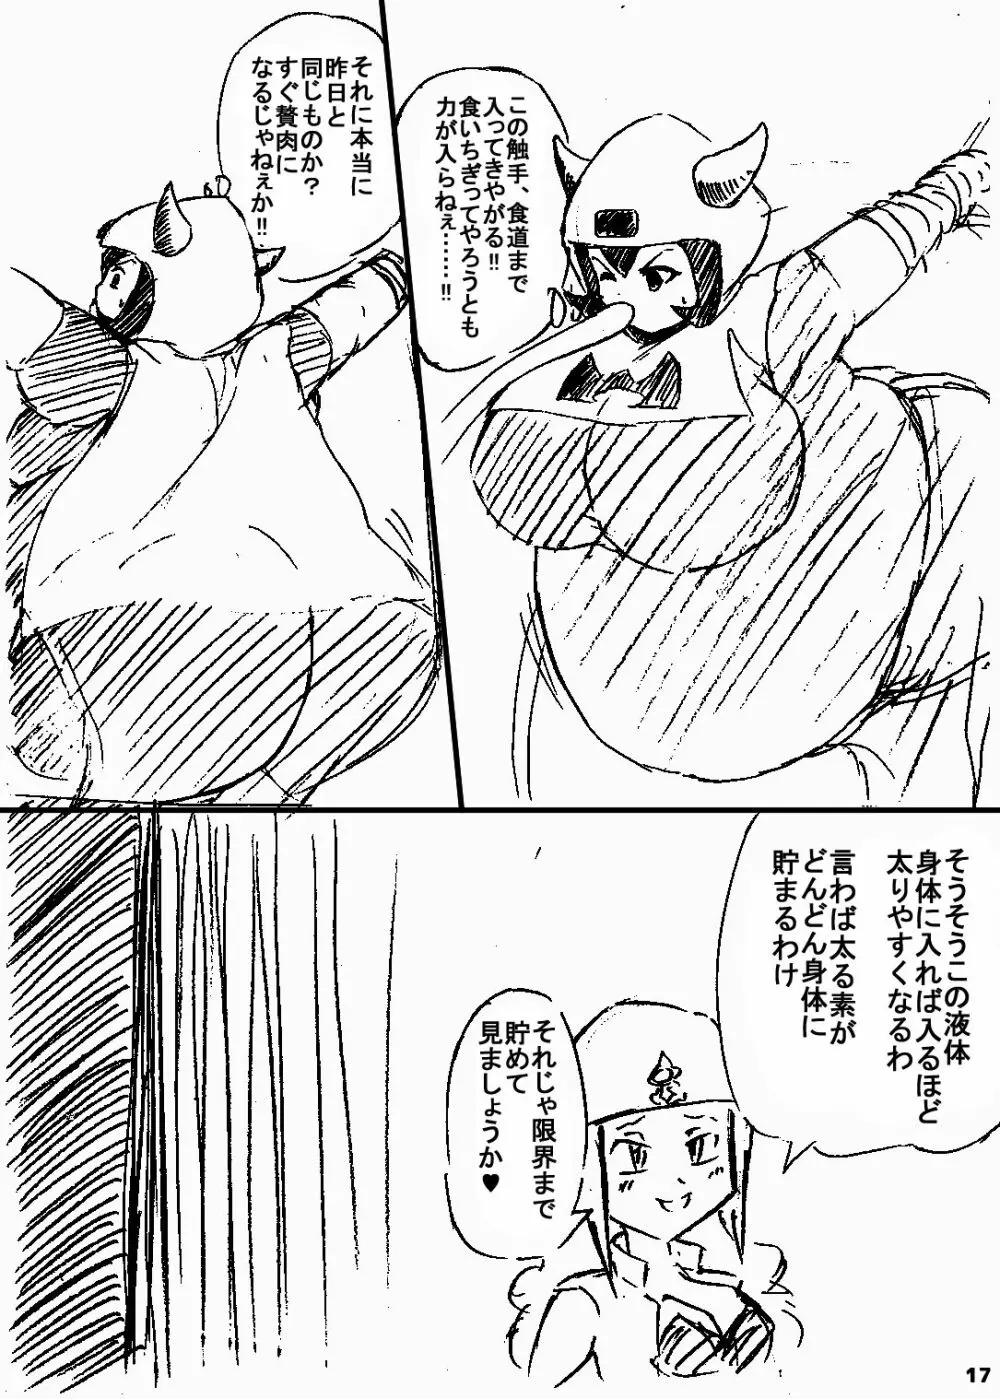 ポケスペカガリ肥満化漫画 16ページ